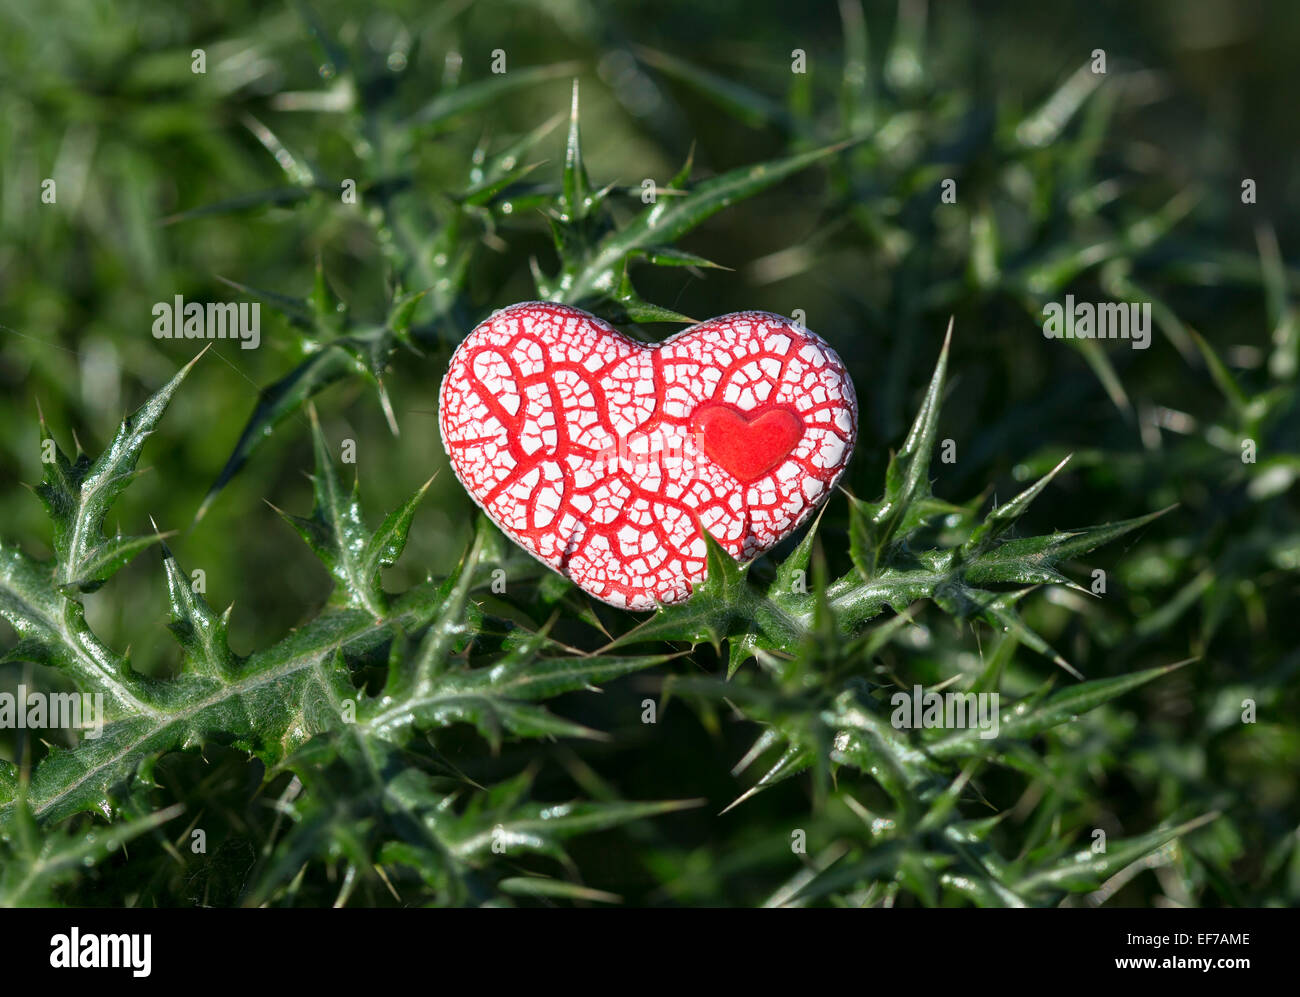 Un corazón moteado de cerámica roja con un pequeño corazón dentro de él se coloca en verde de espinas. Foto de stock